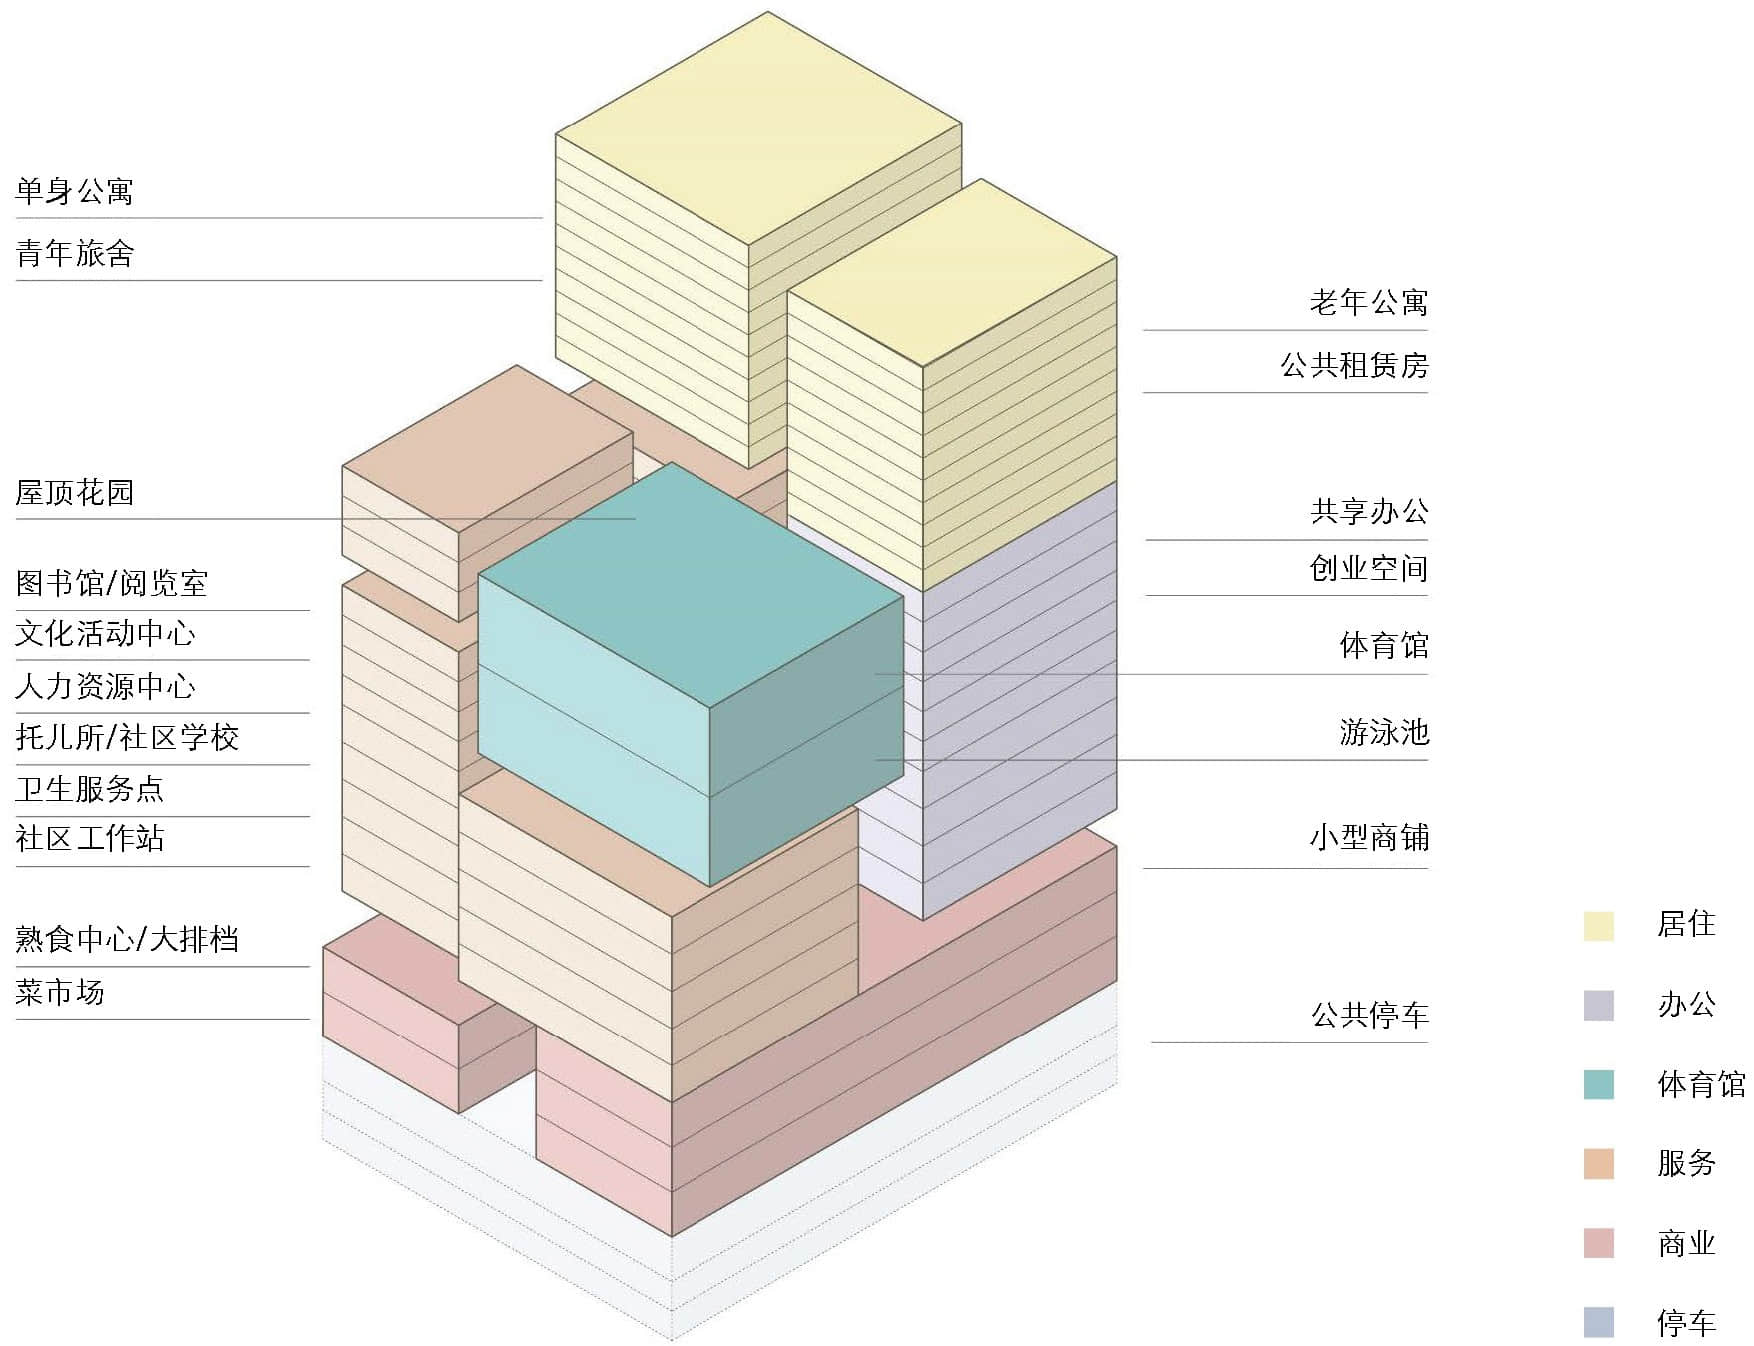 在福田区拟建市政大厦的标准功能配置示意图